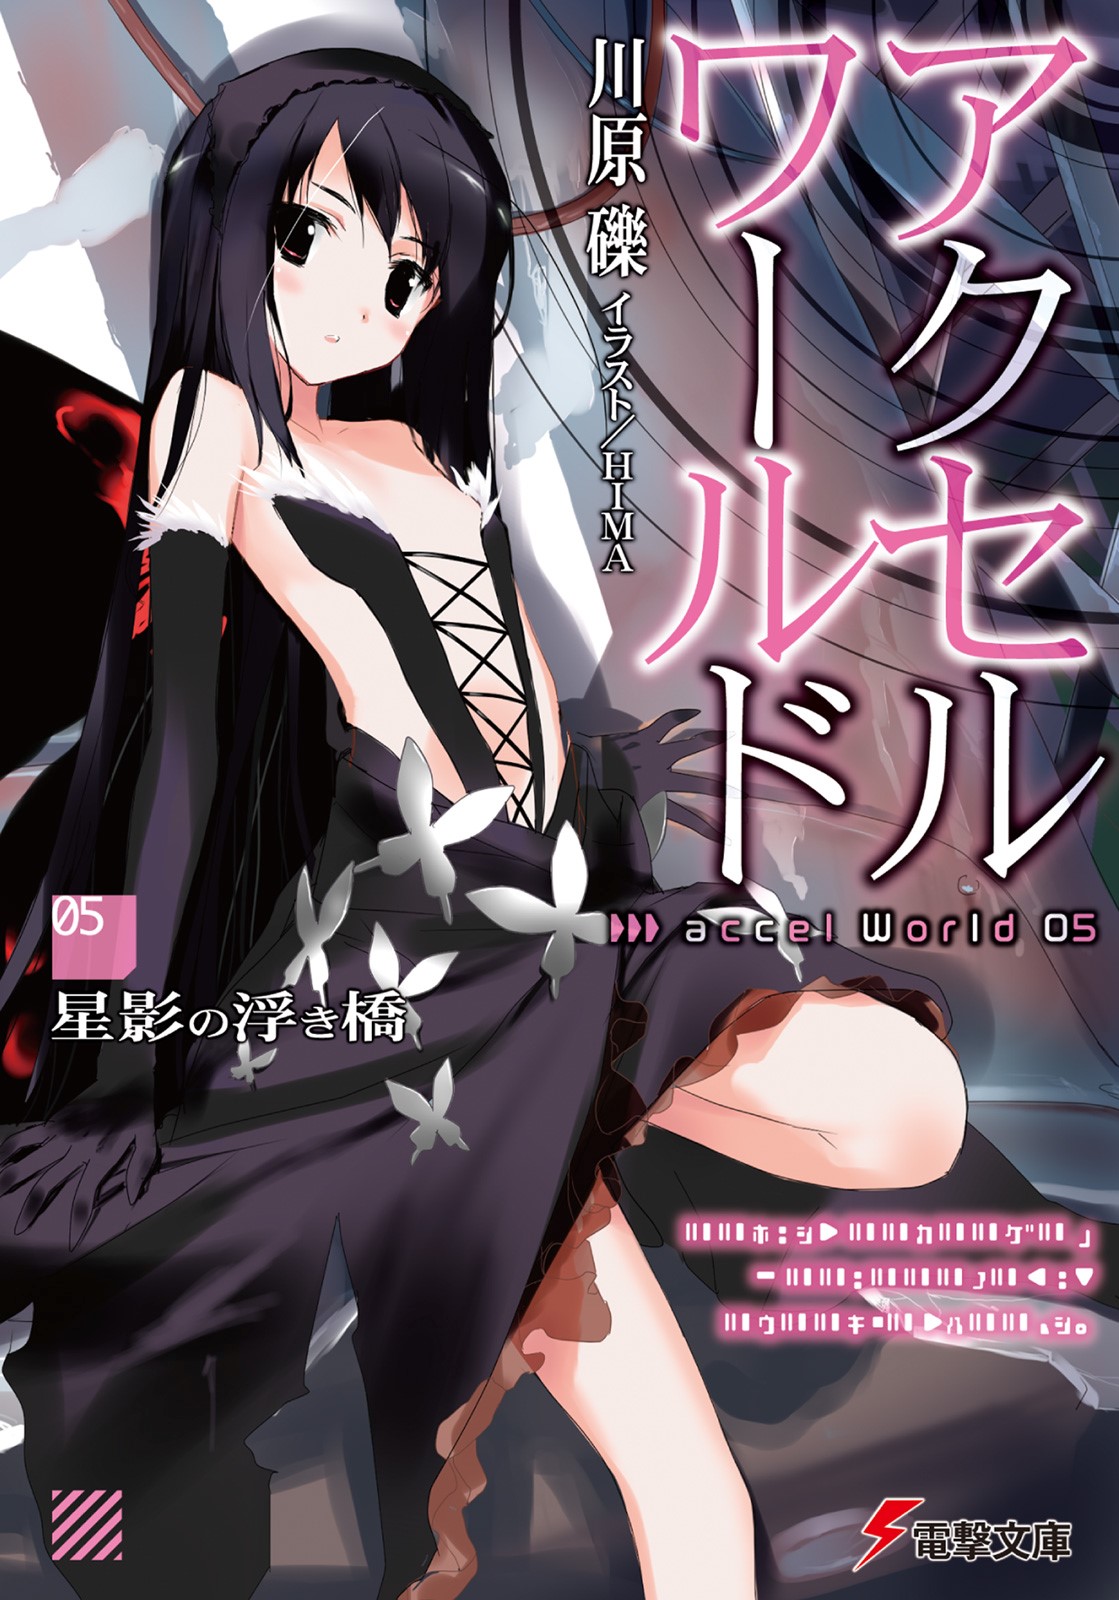 Ilustrasi Light Novel Accel World - Volume 05